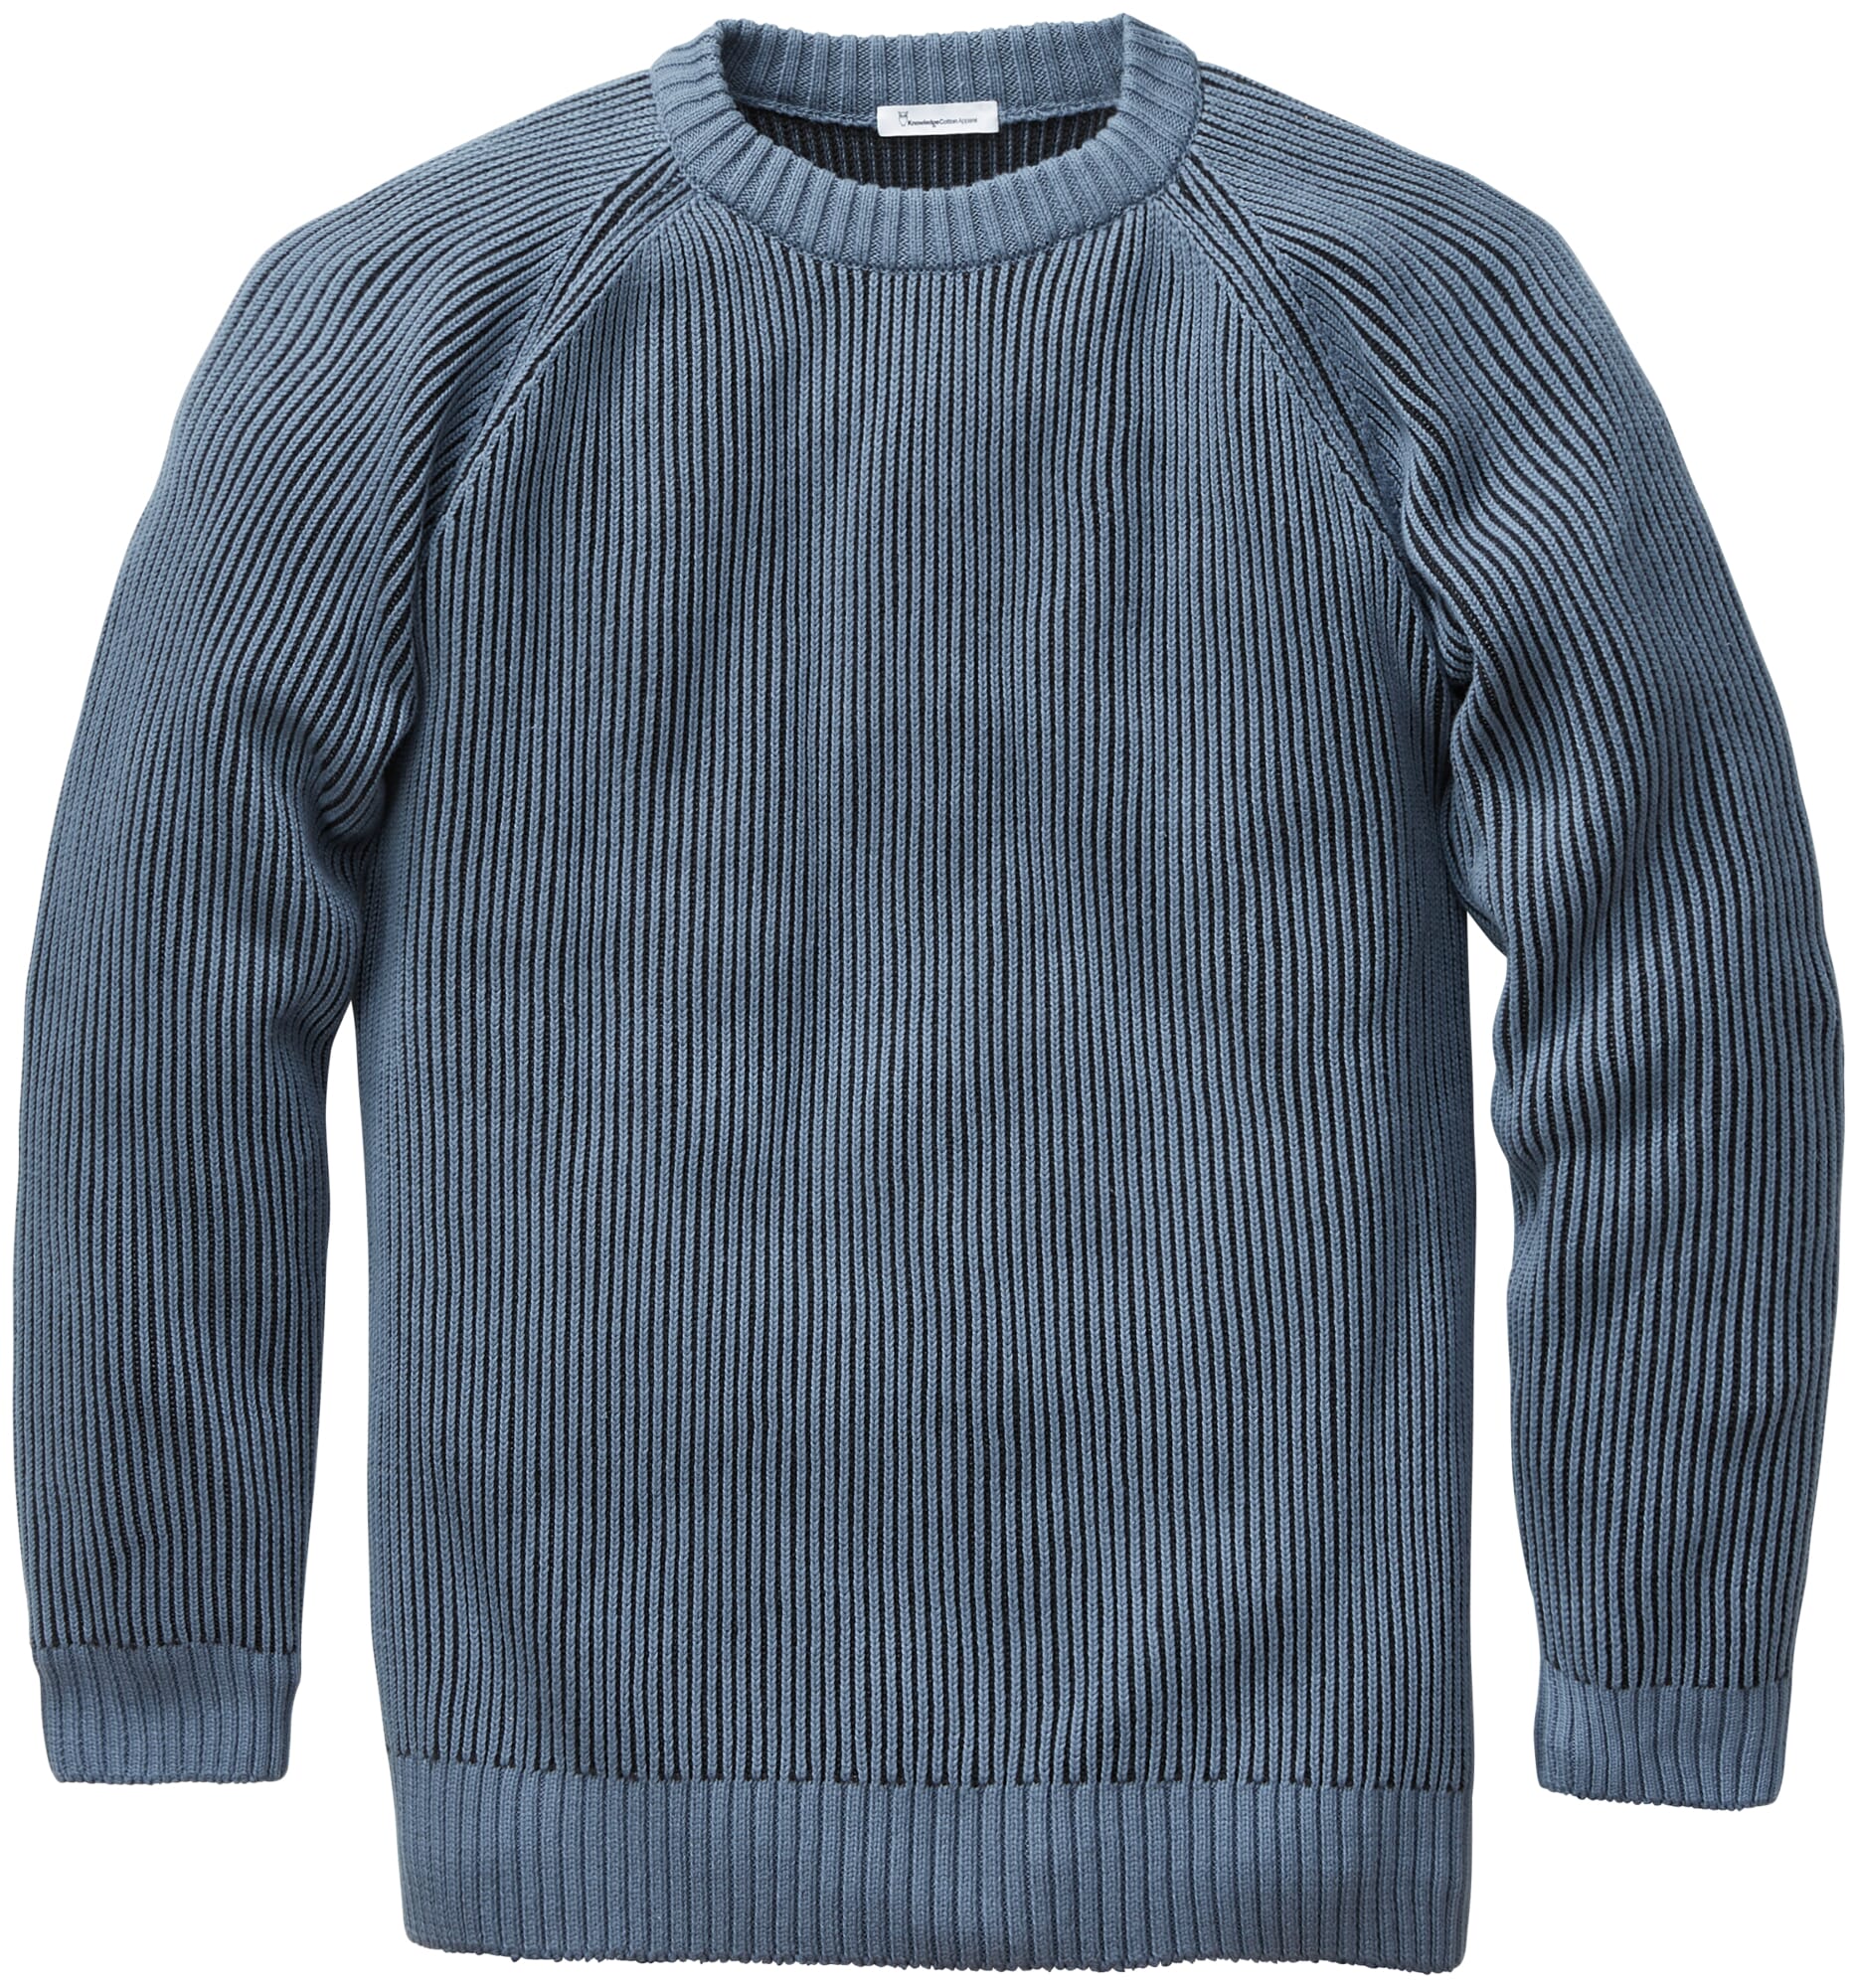 Mens Rib Knit Sweater, Blue tones